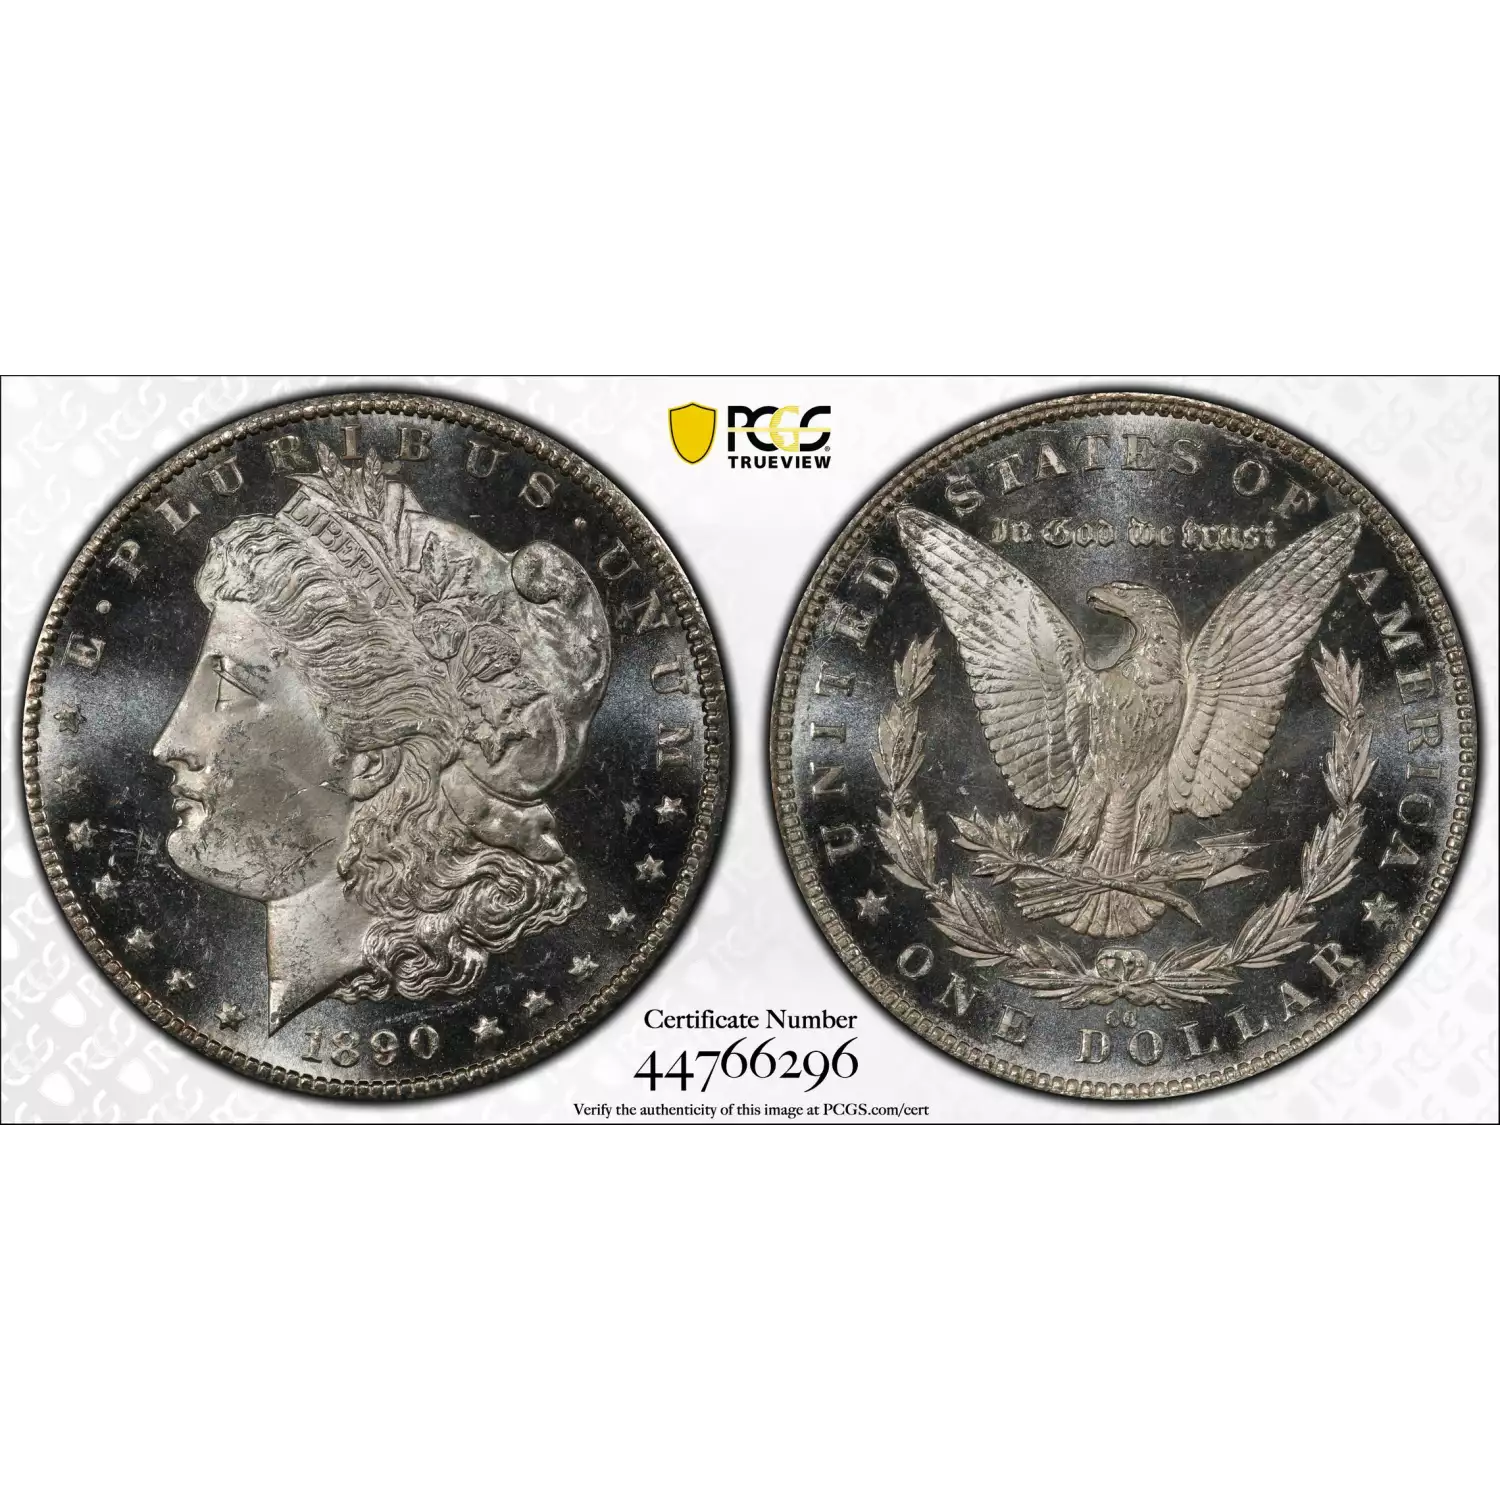 1890-CC $1, PL